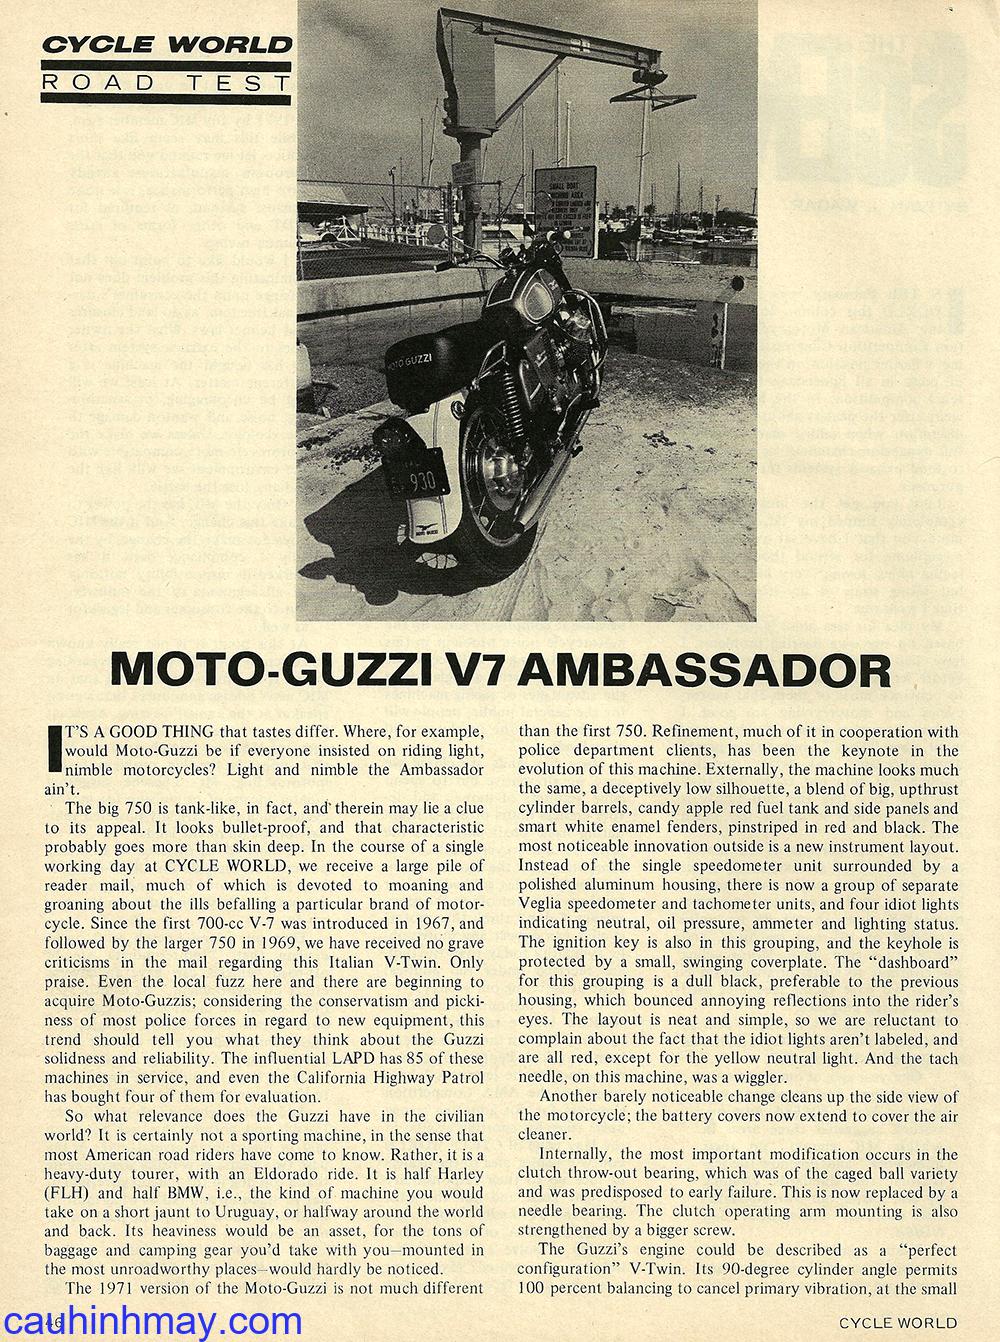 MOTO GUZZI V-7 750 AMBASSADOR - cauhinhmay.com